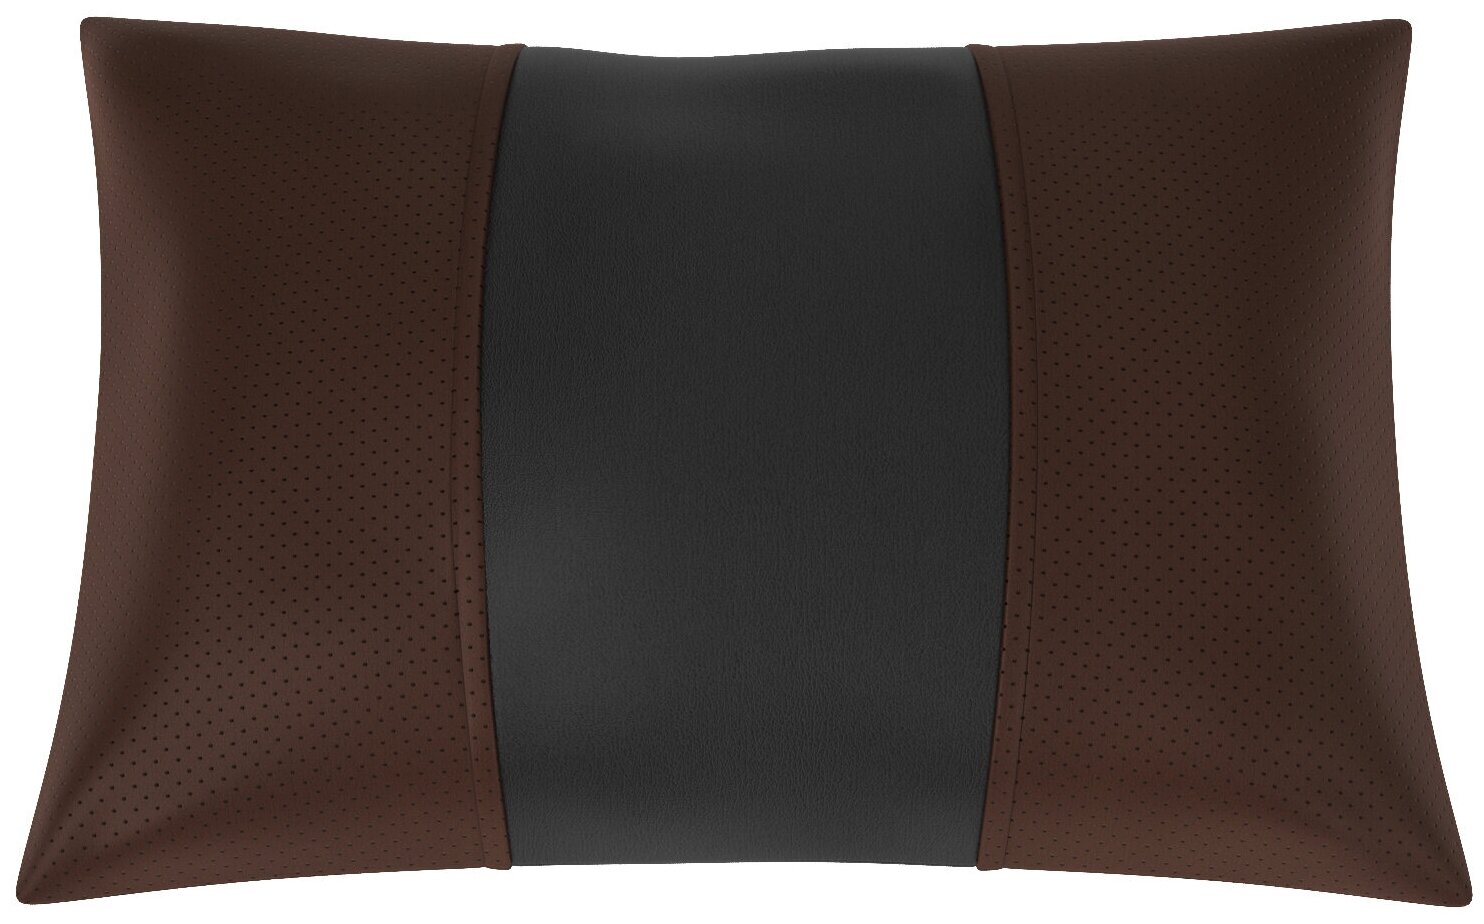 Автомобильная подушка для Citroen Berlingo 1. Экокожа. Середина: чёрная гладкая экокожа. Боковины: шоколад экокожа с перфорацией. 1 шт.